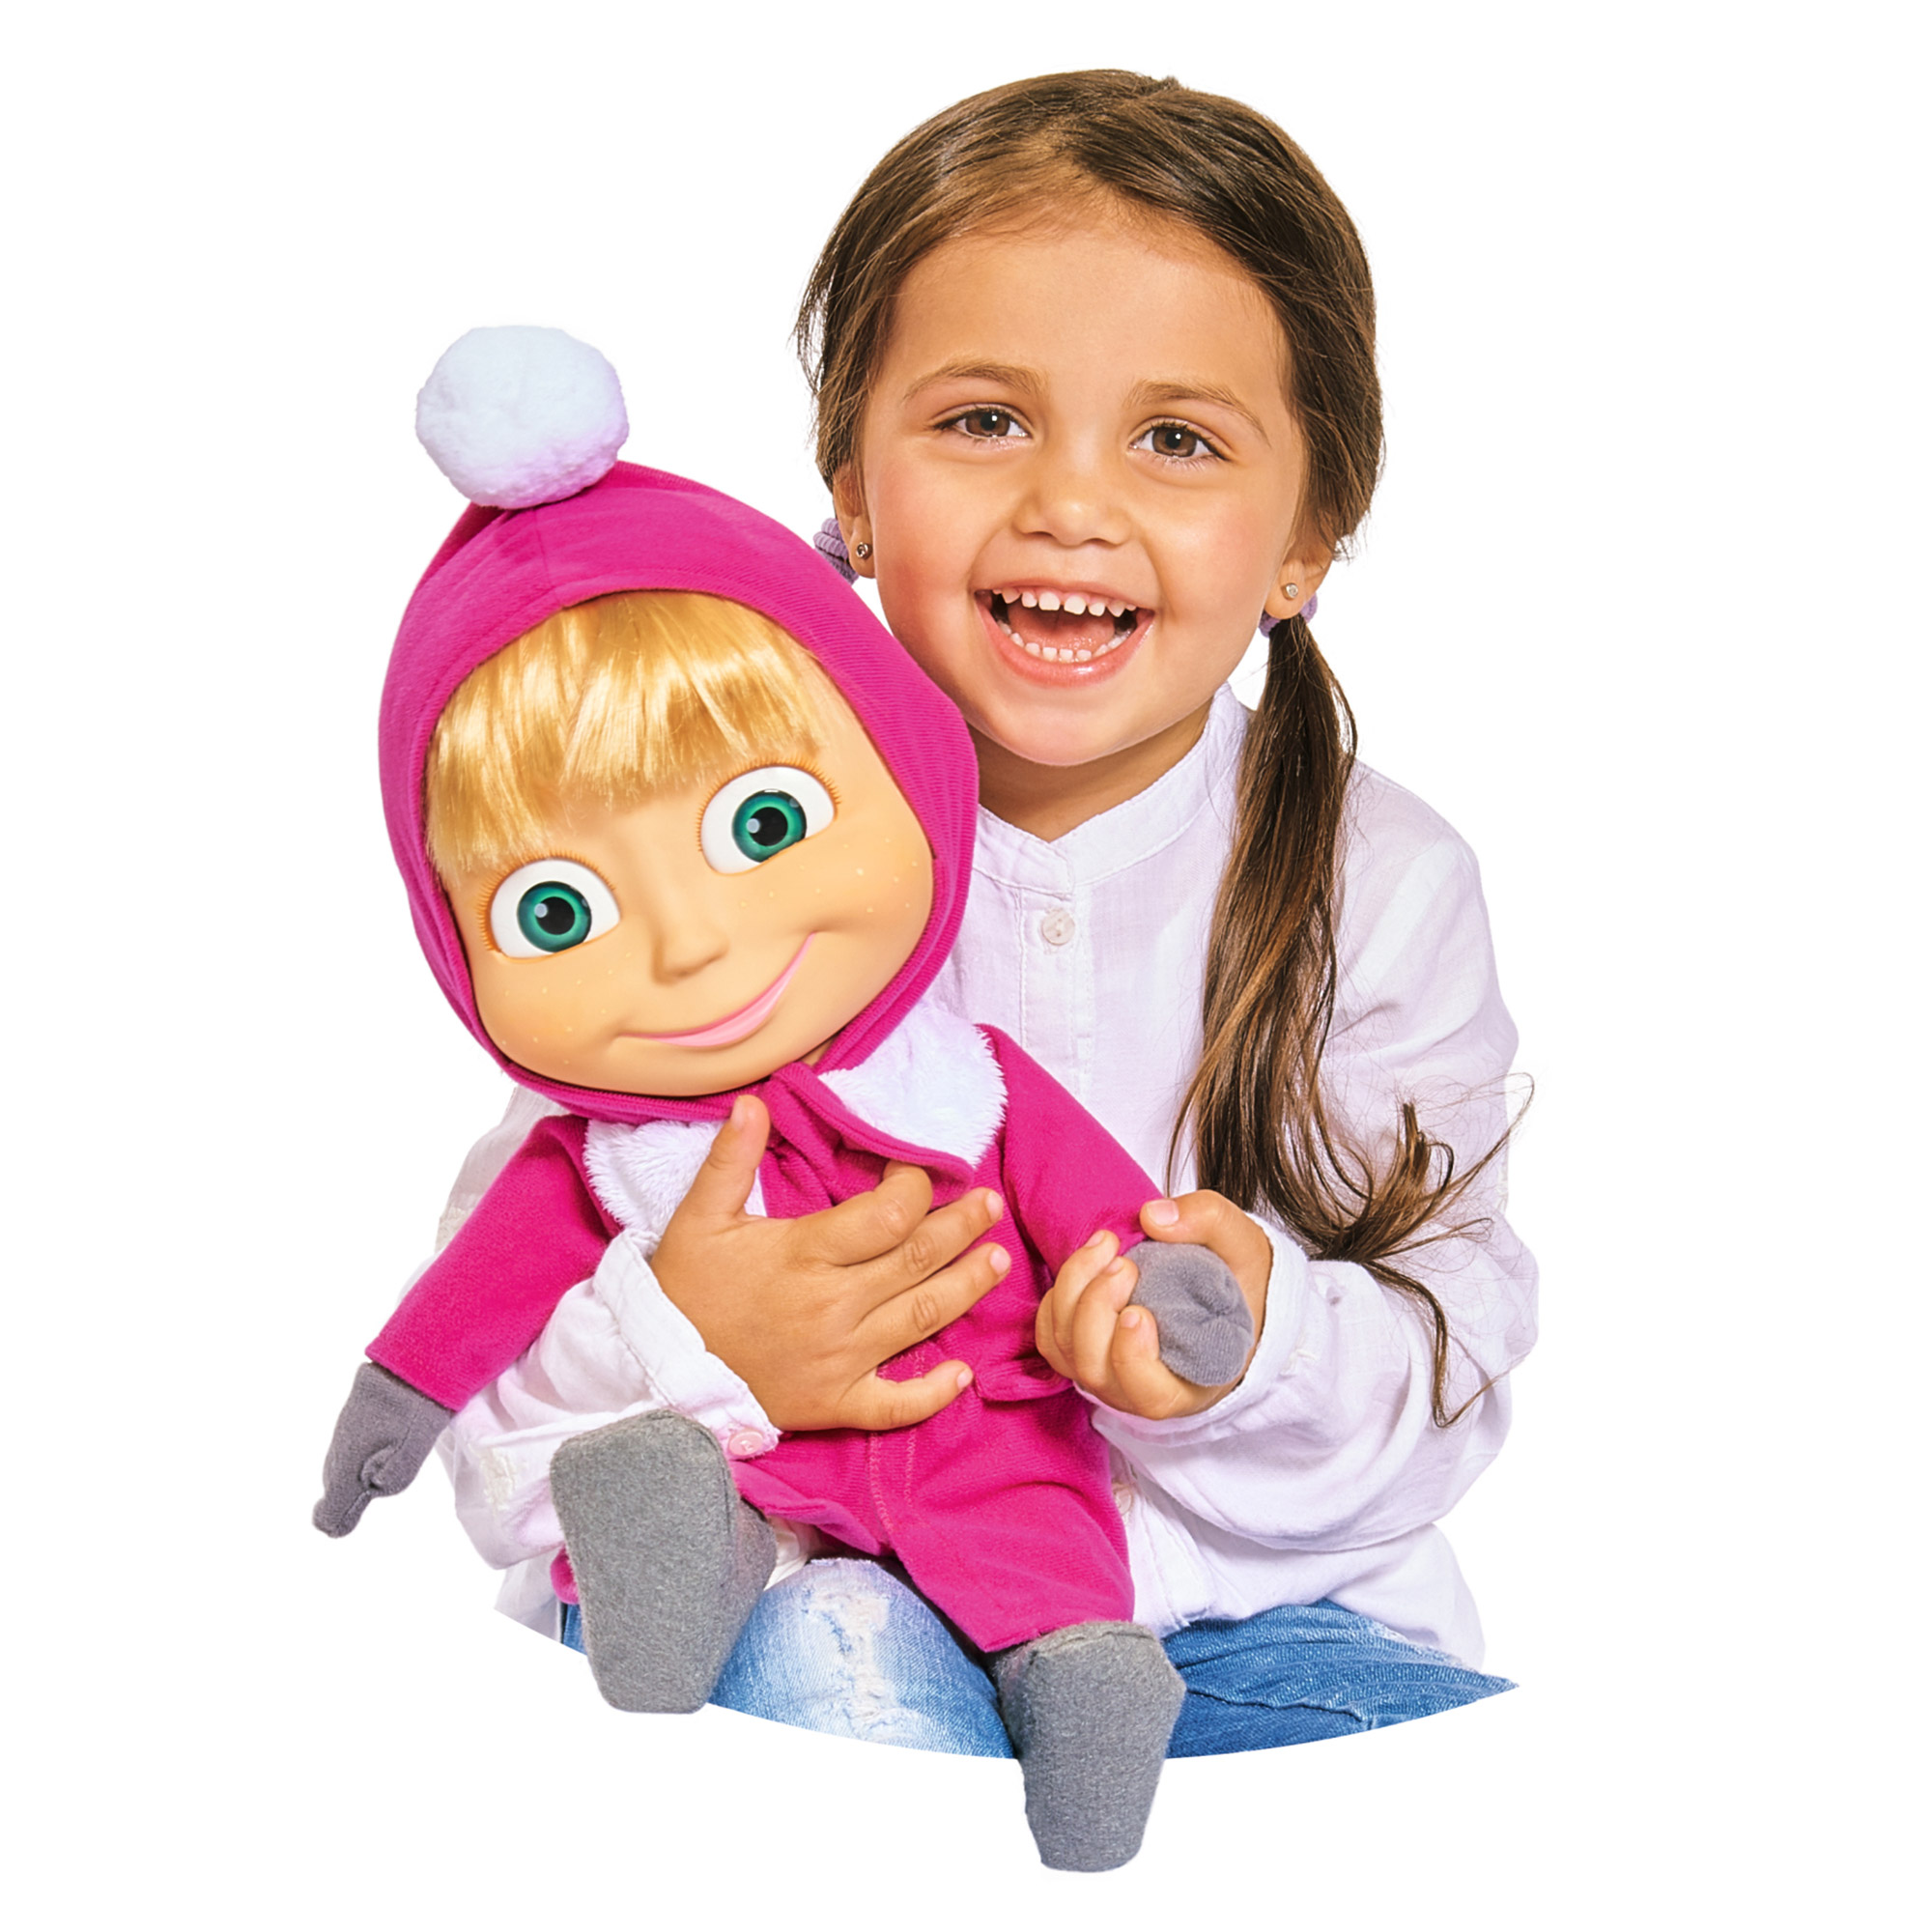 Включи кукла игрушки. Кукла "Маша и медведь", 30 см. Маша и медведь кукла Маша. Кукла Машуко робот. Машуко Маша и медведь.